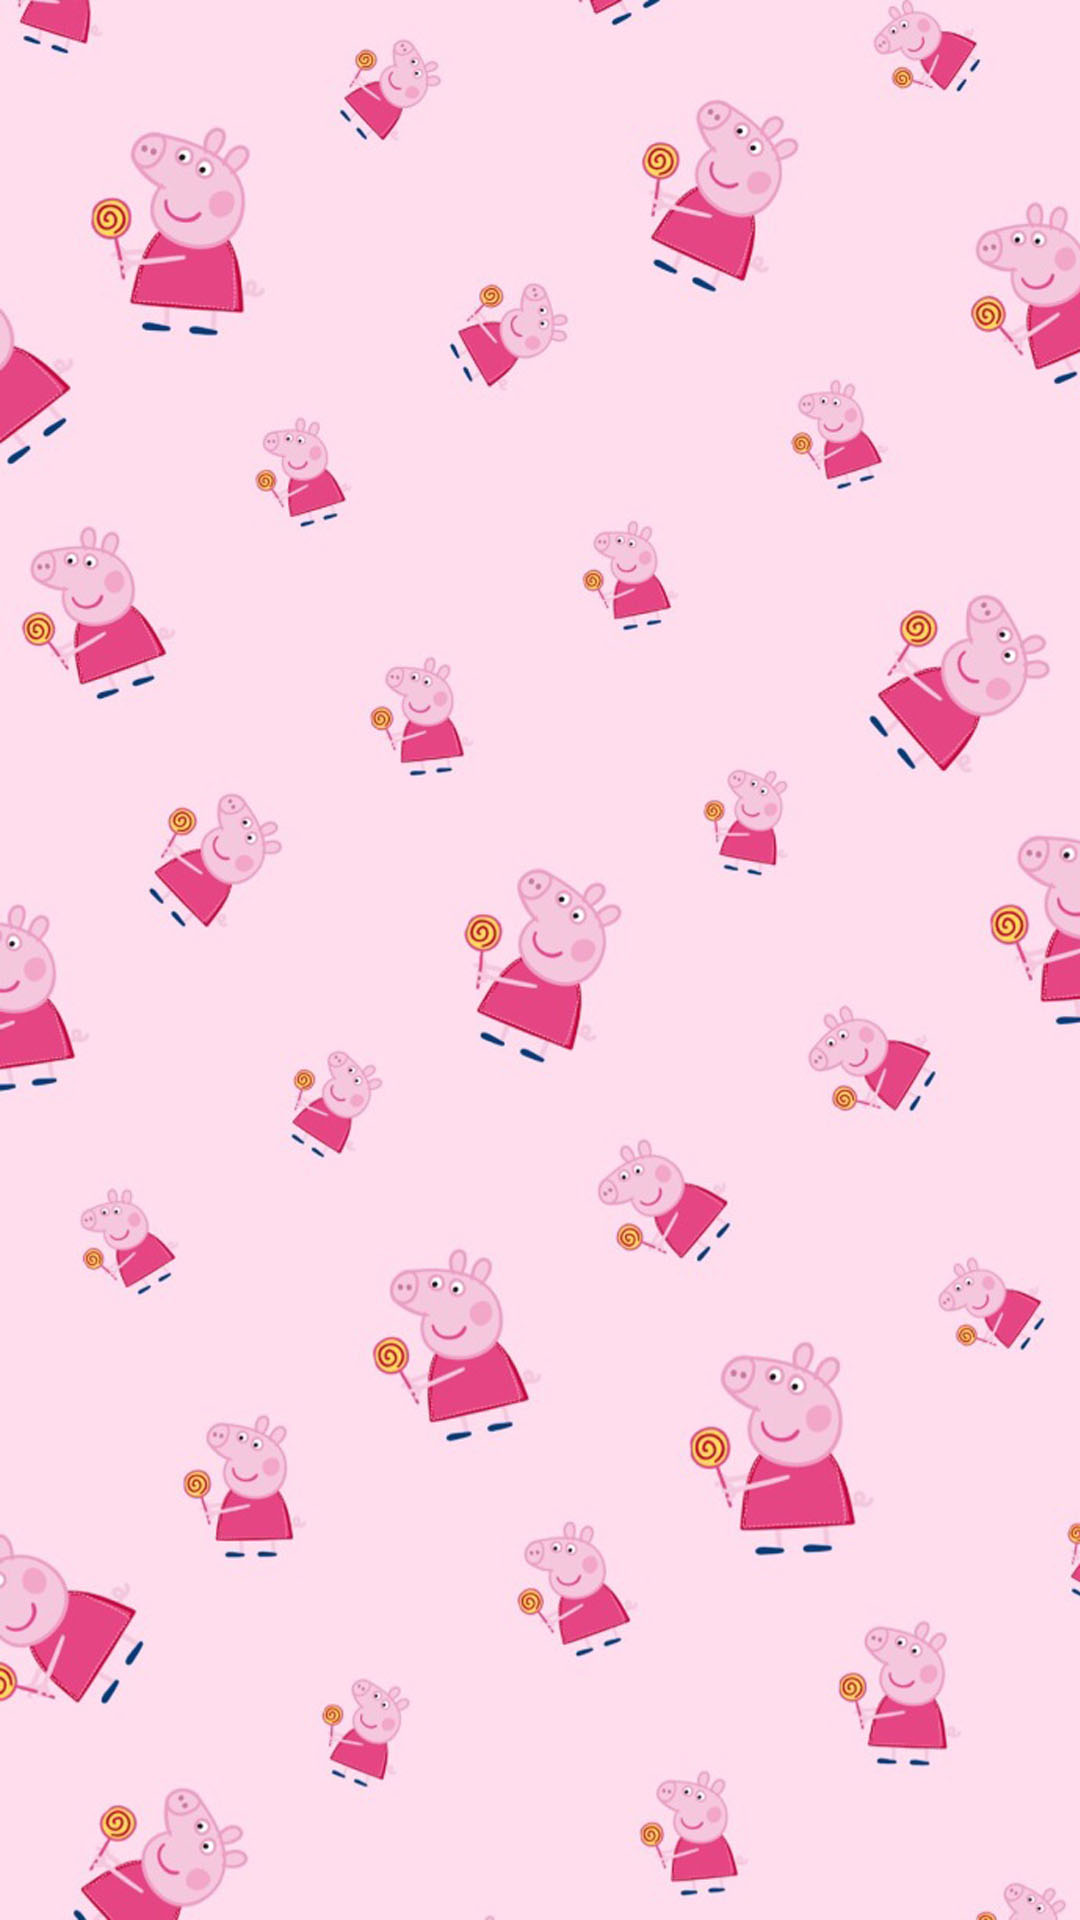 《小猪佩奇》可爱卡通高清图片手机壁纸